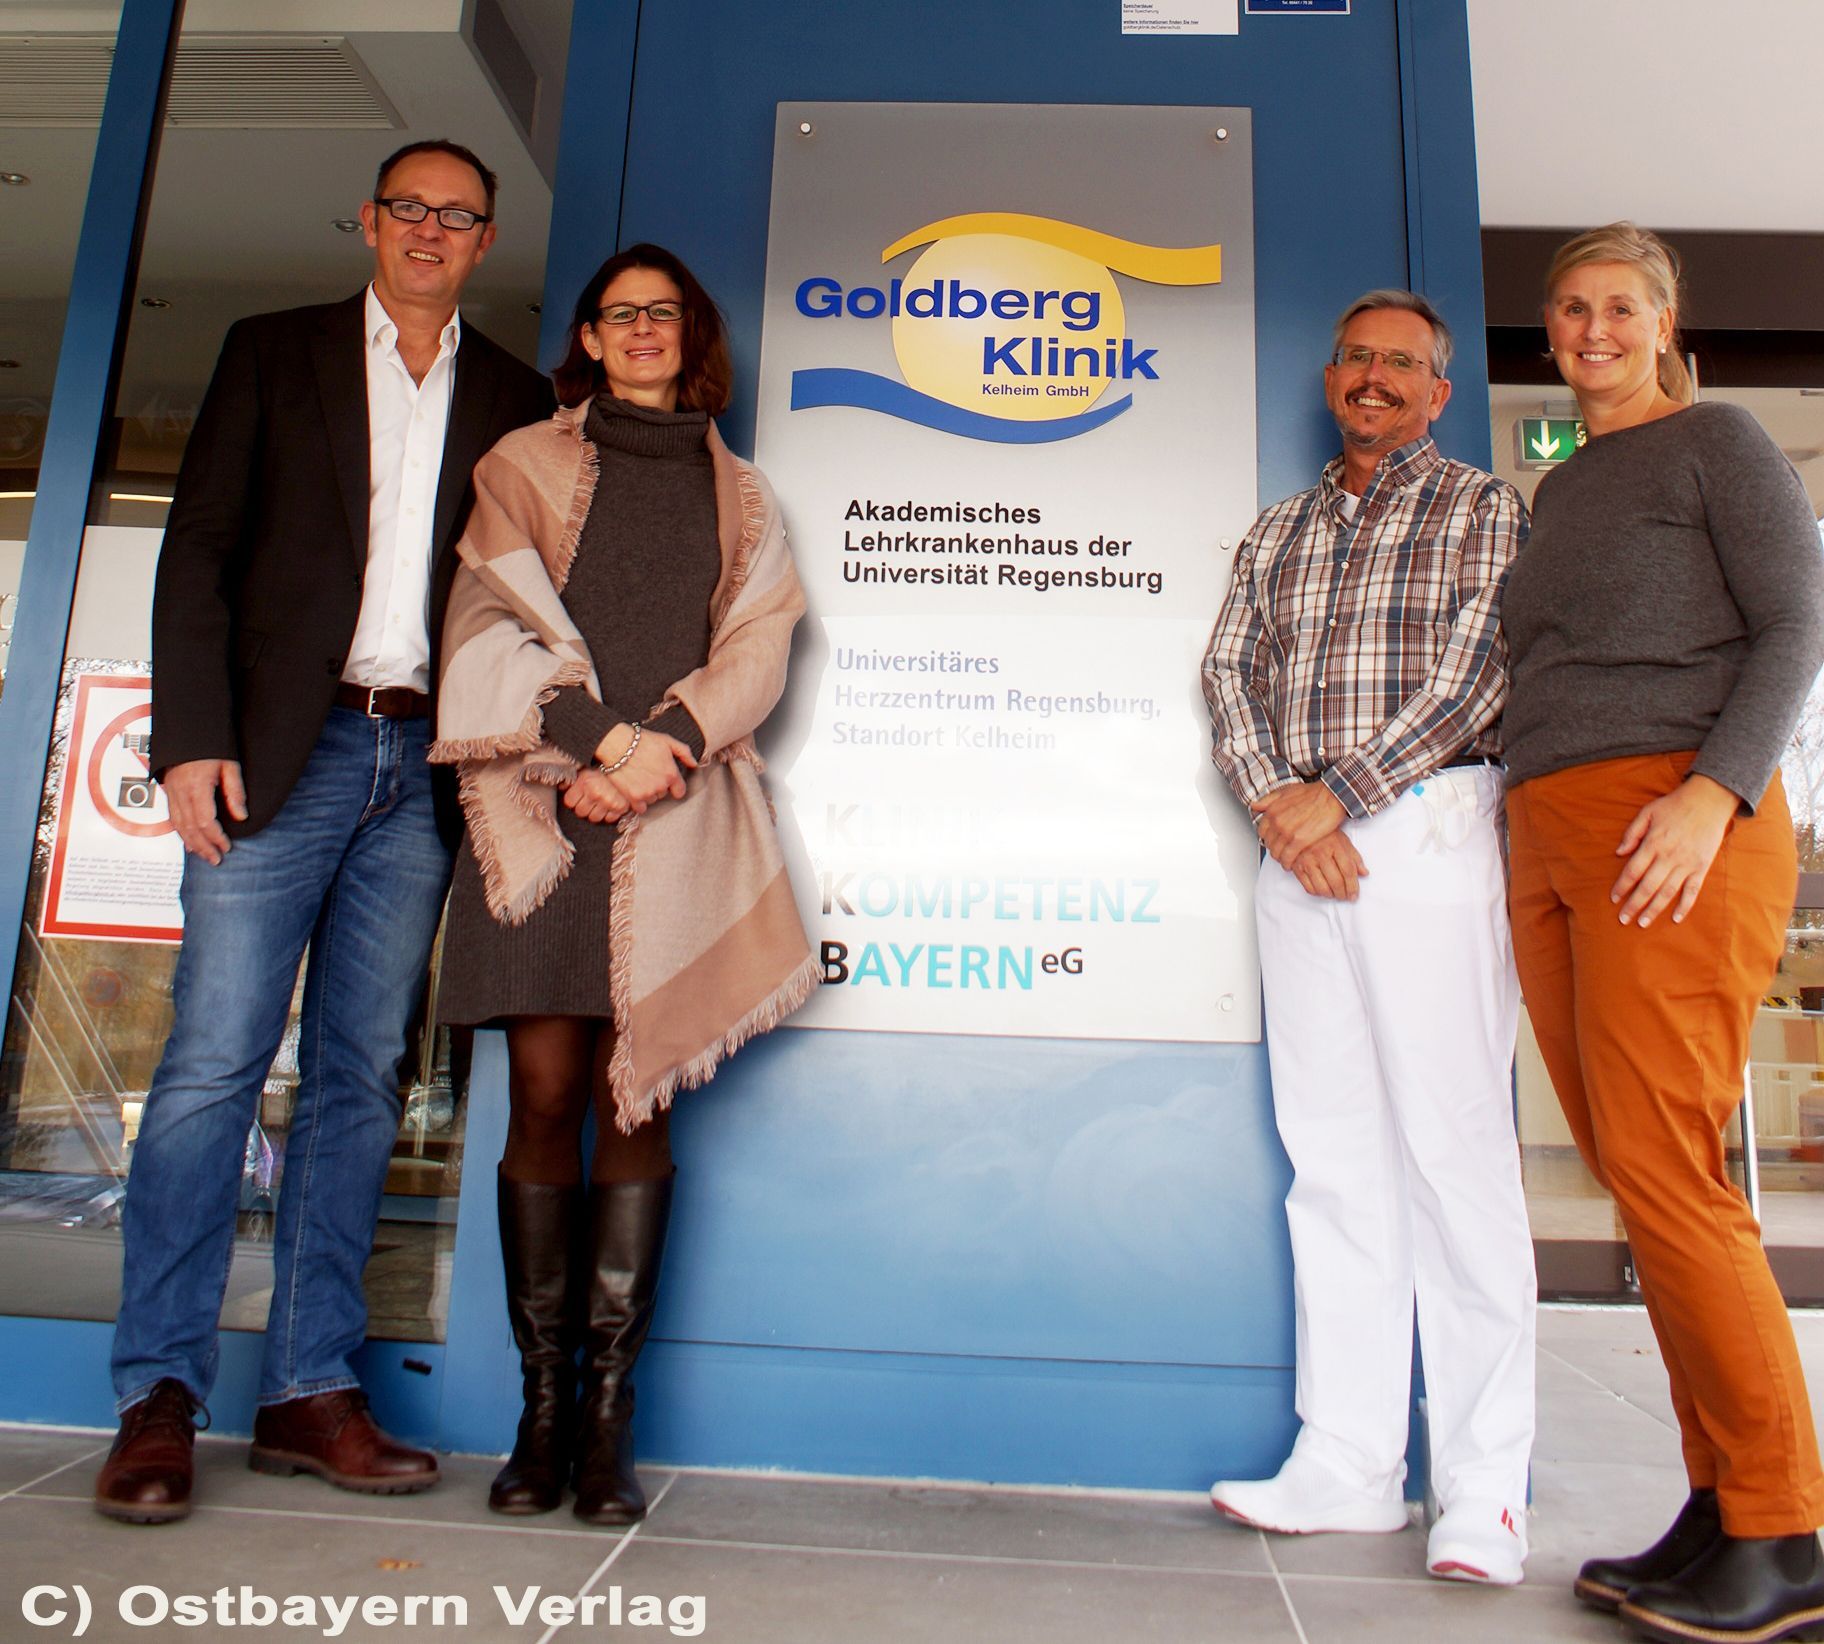 Bestmögliche Krebsversorgung auch in Zukunft in der Region Kelheim durch die Kooperation der Regensburger Schwerpunktpraxis mit der Goldbergklinik.